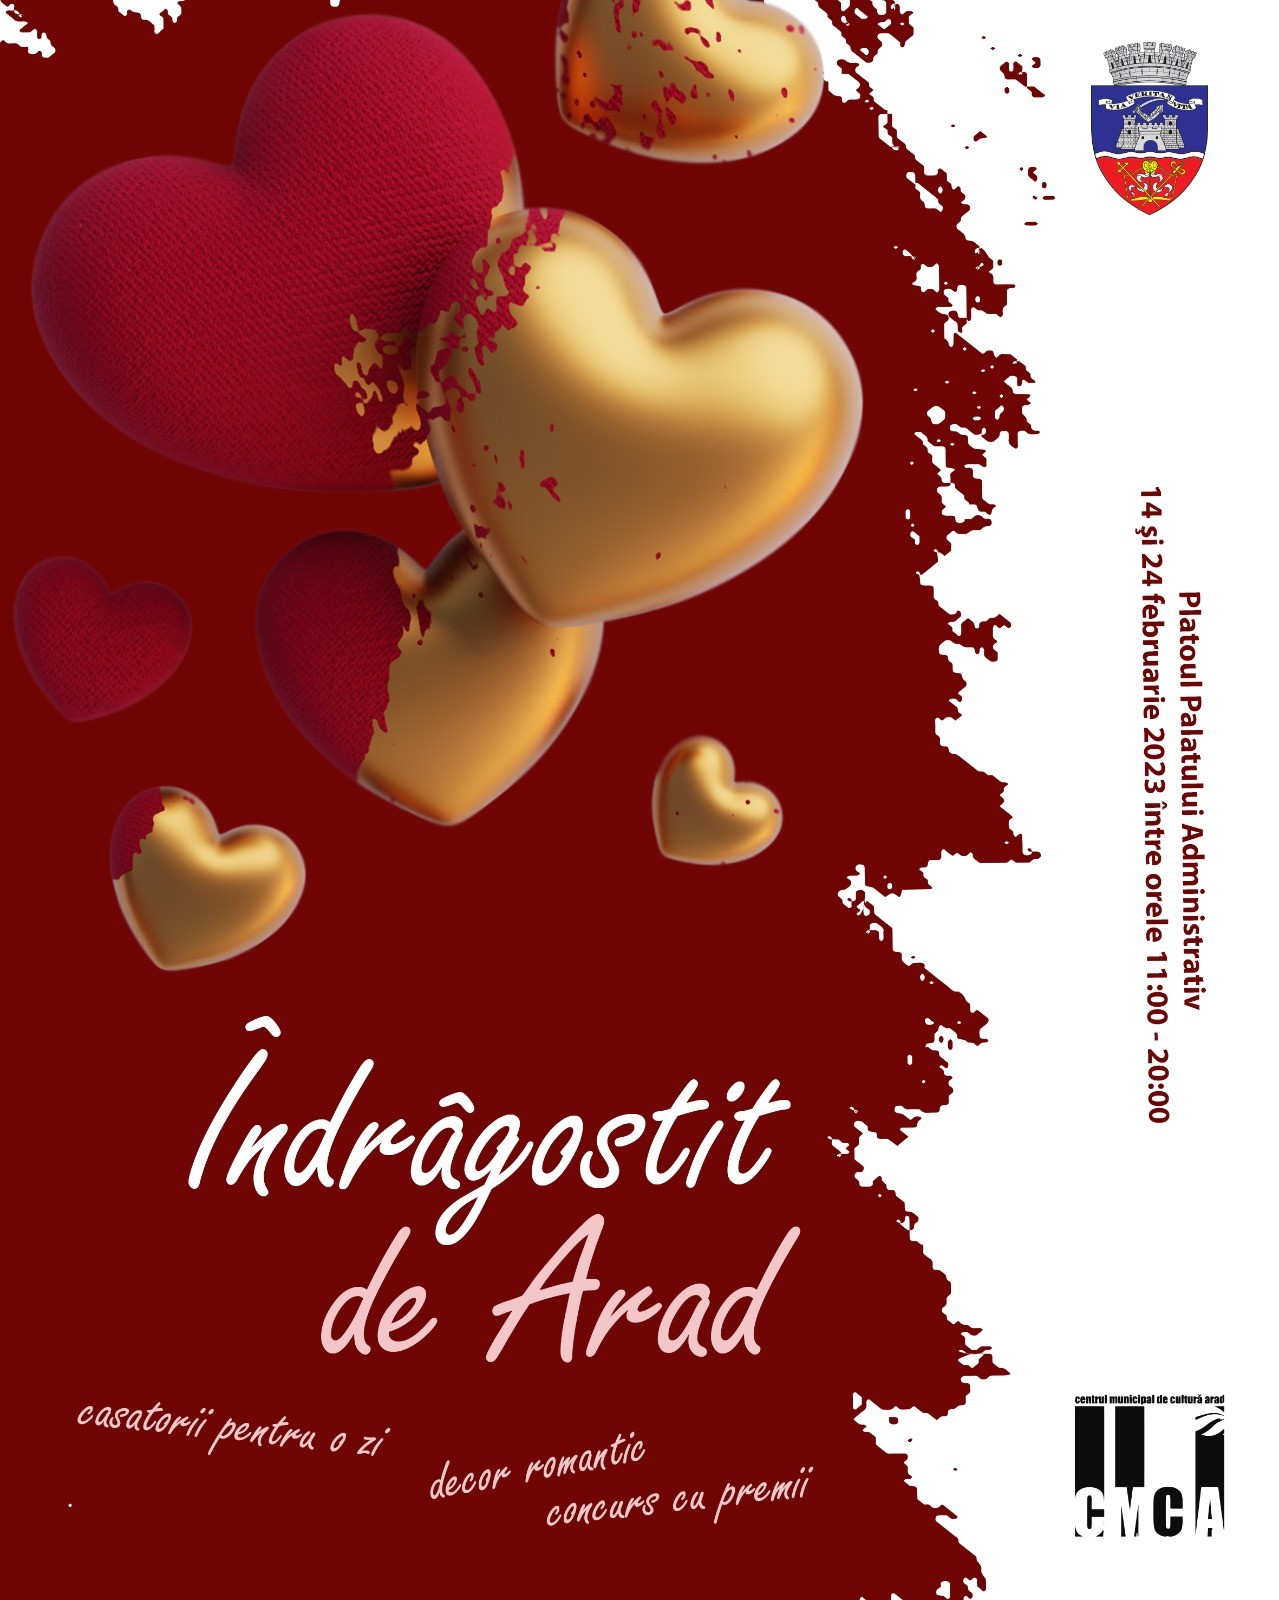 „Îndrăgostit de Arad“, de Valentine’s Day și Dragobete